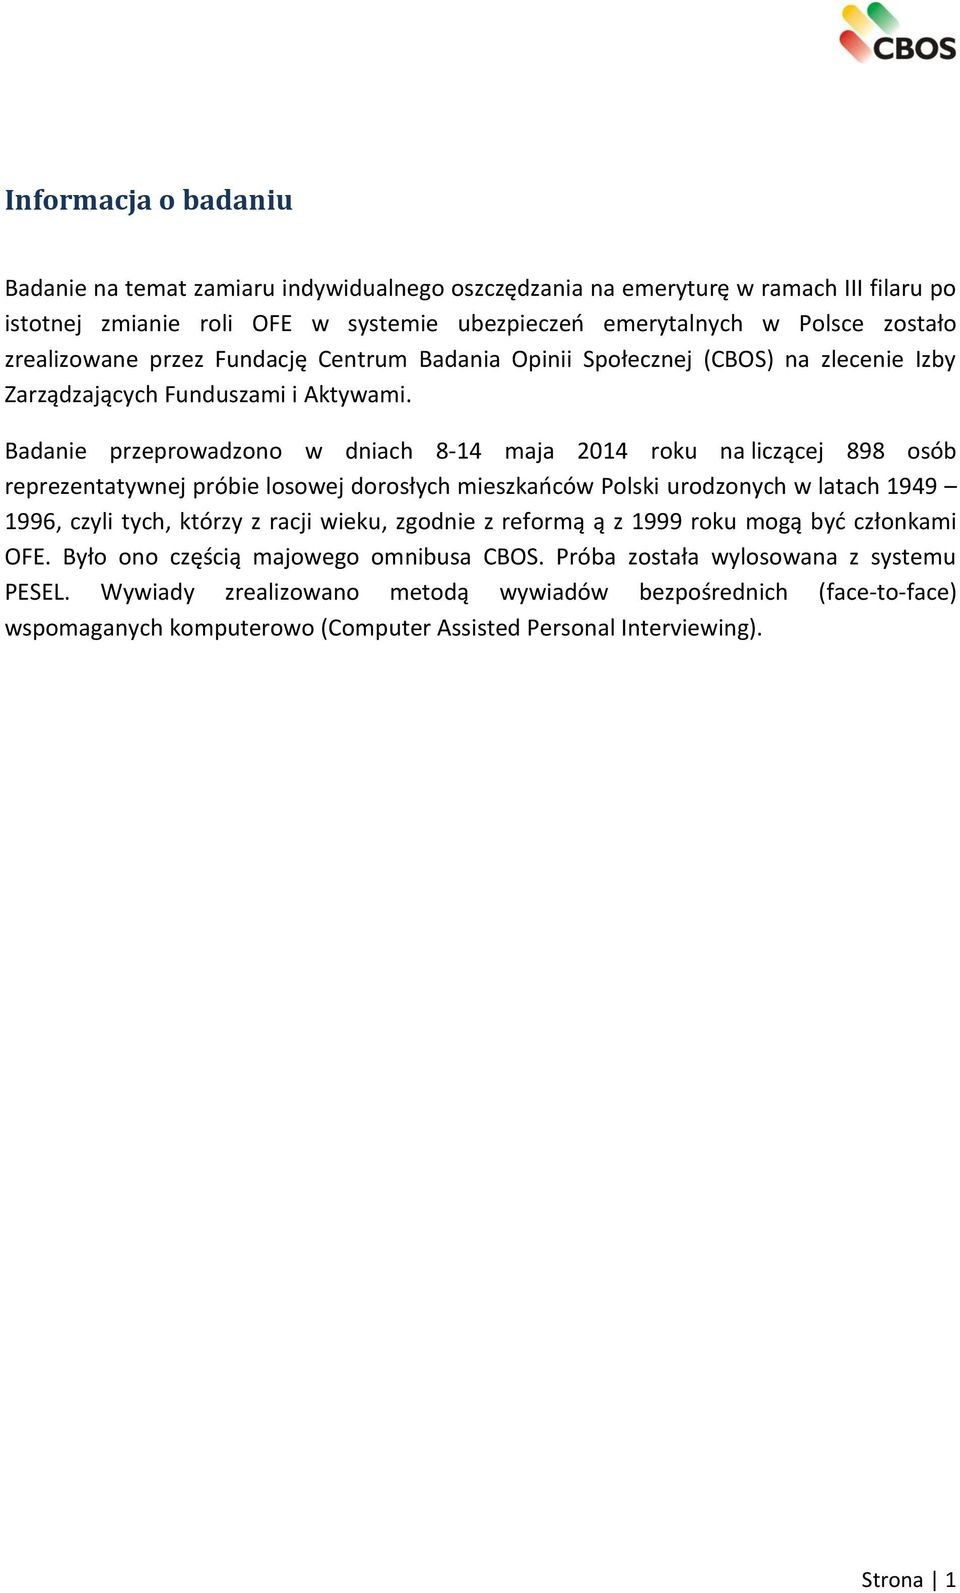 Badanie przeprowadzono w dniach 8-14 maja 2014 roku na liczącej 898 osób reprezentatywnej próbie losowej dorosłych mieszkańców Polski urodzonych w latach 1949 1996, czyli tych, którzy z racji wieku,